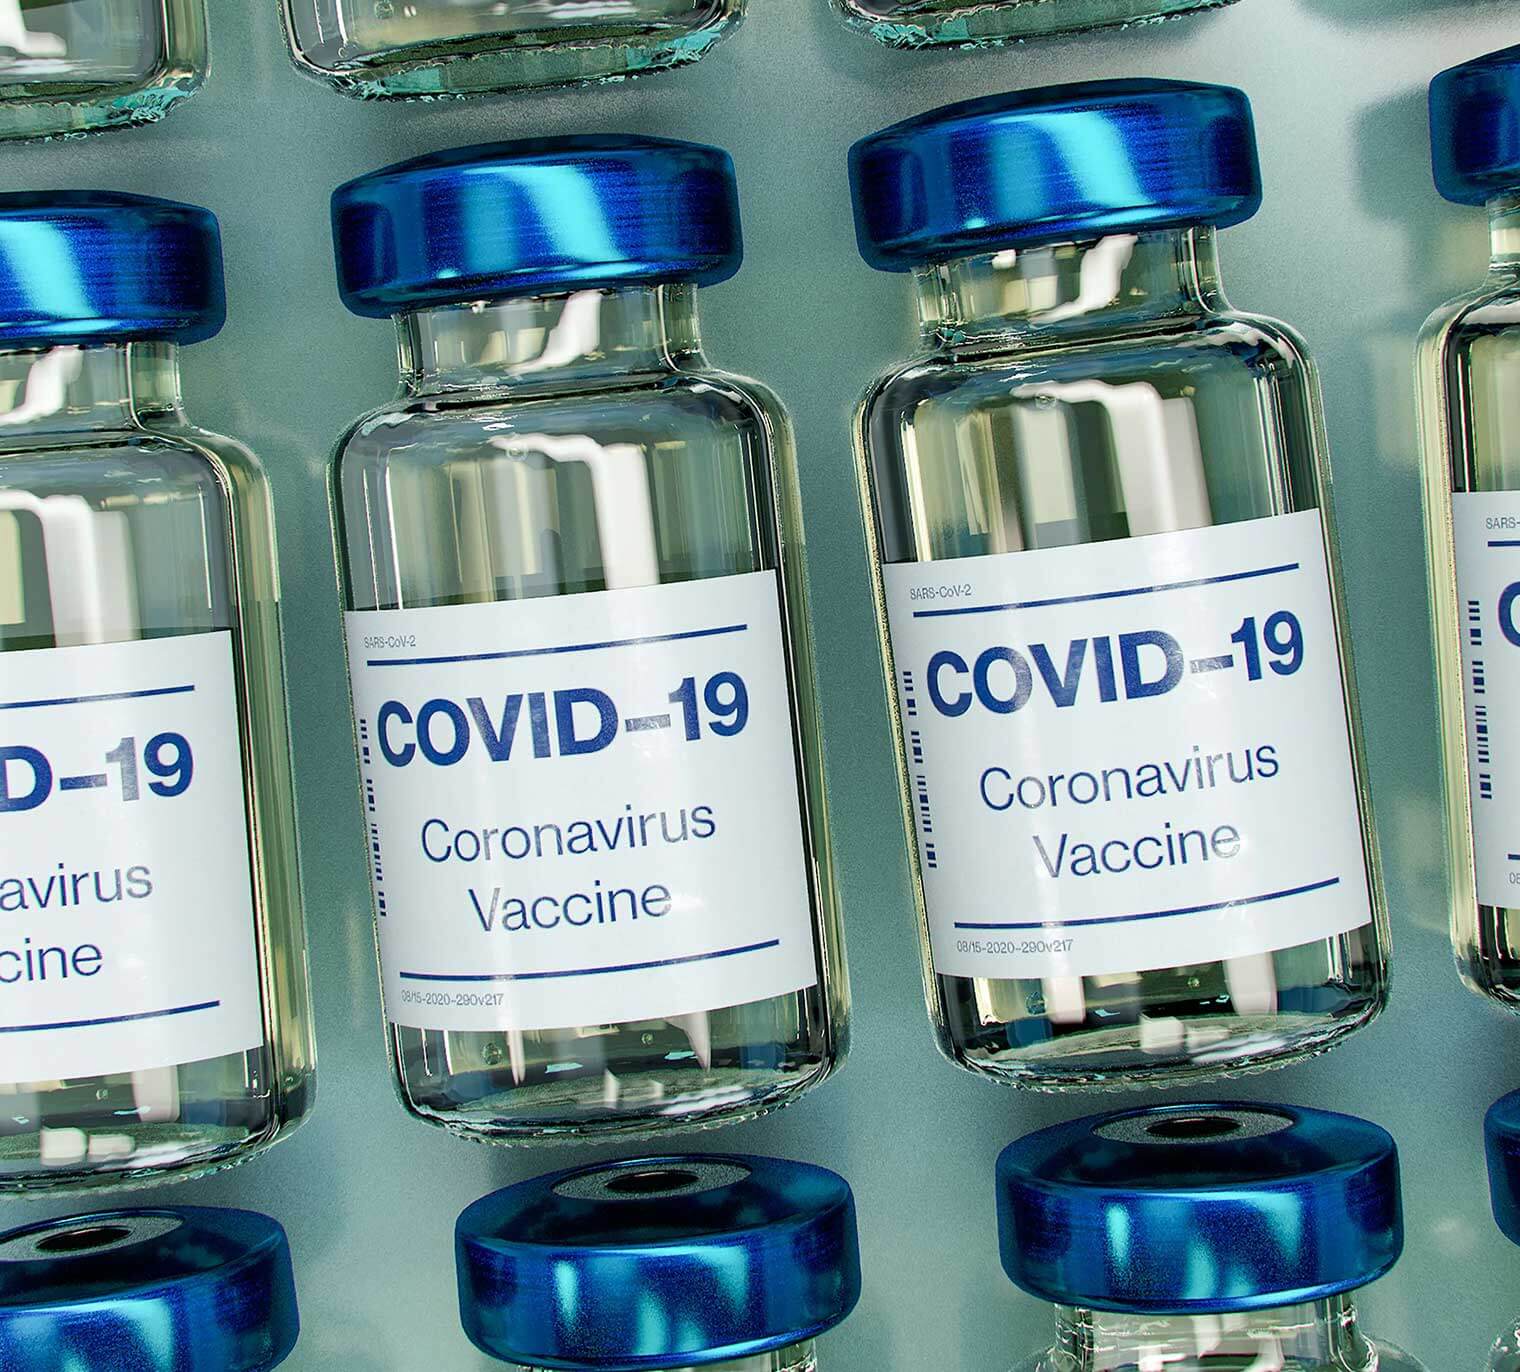 Vaccine Mandate